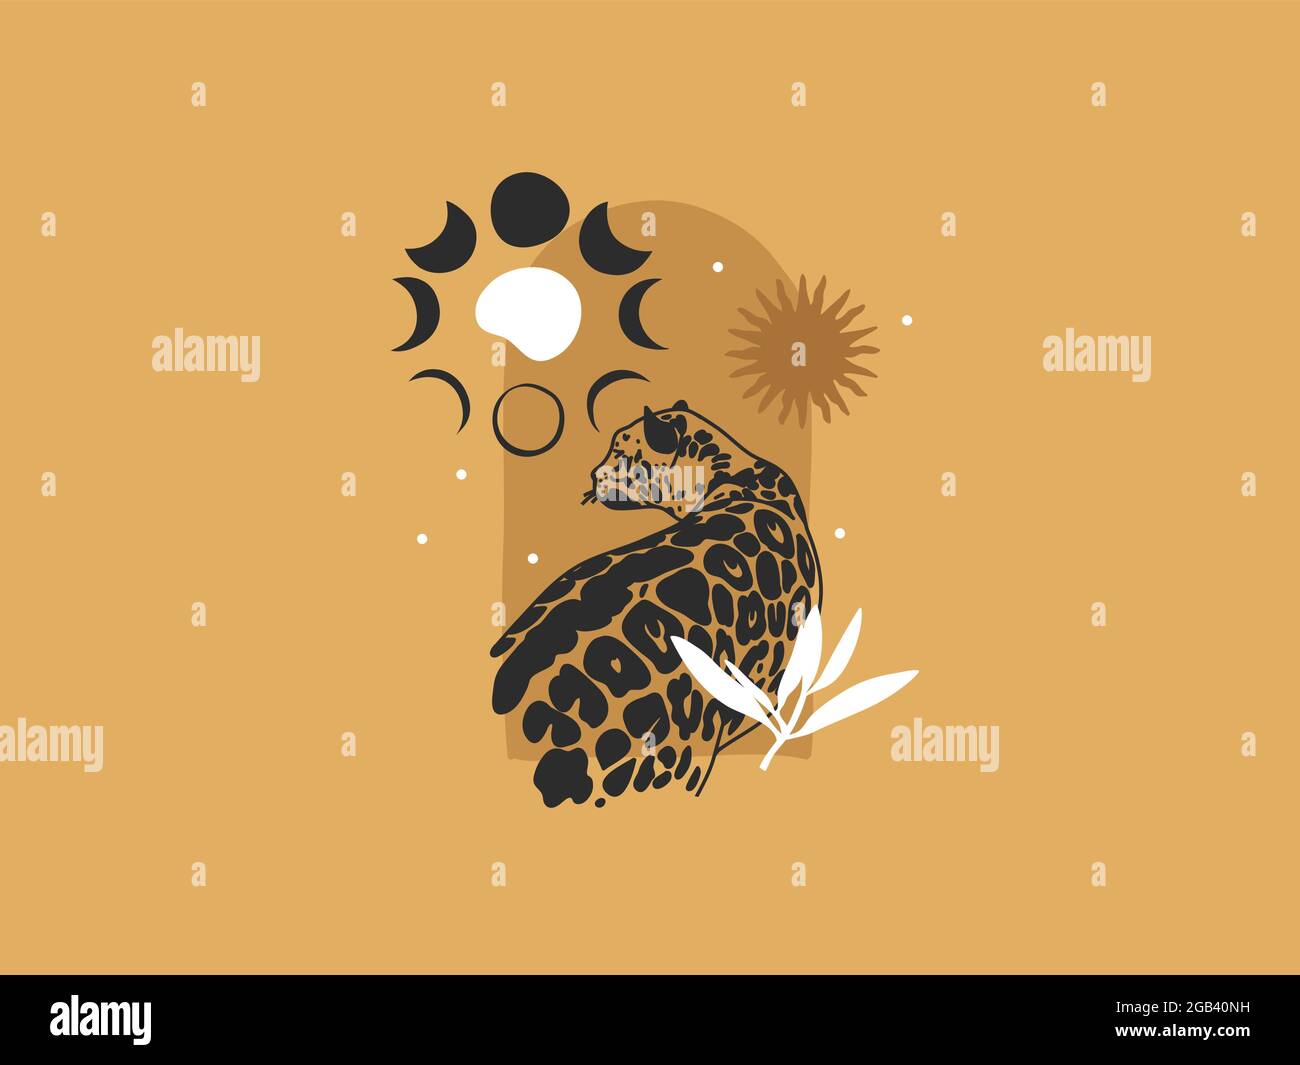 Dessin à la main vecteur résumé stock plat illustration graphique avec les éléments de logo léopard et la phase de lune, soleil, art magique dans un style simple pour la marque Illustration de Vecteur